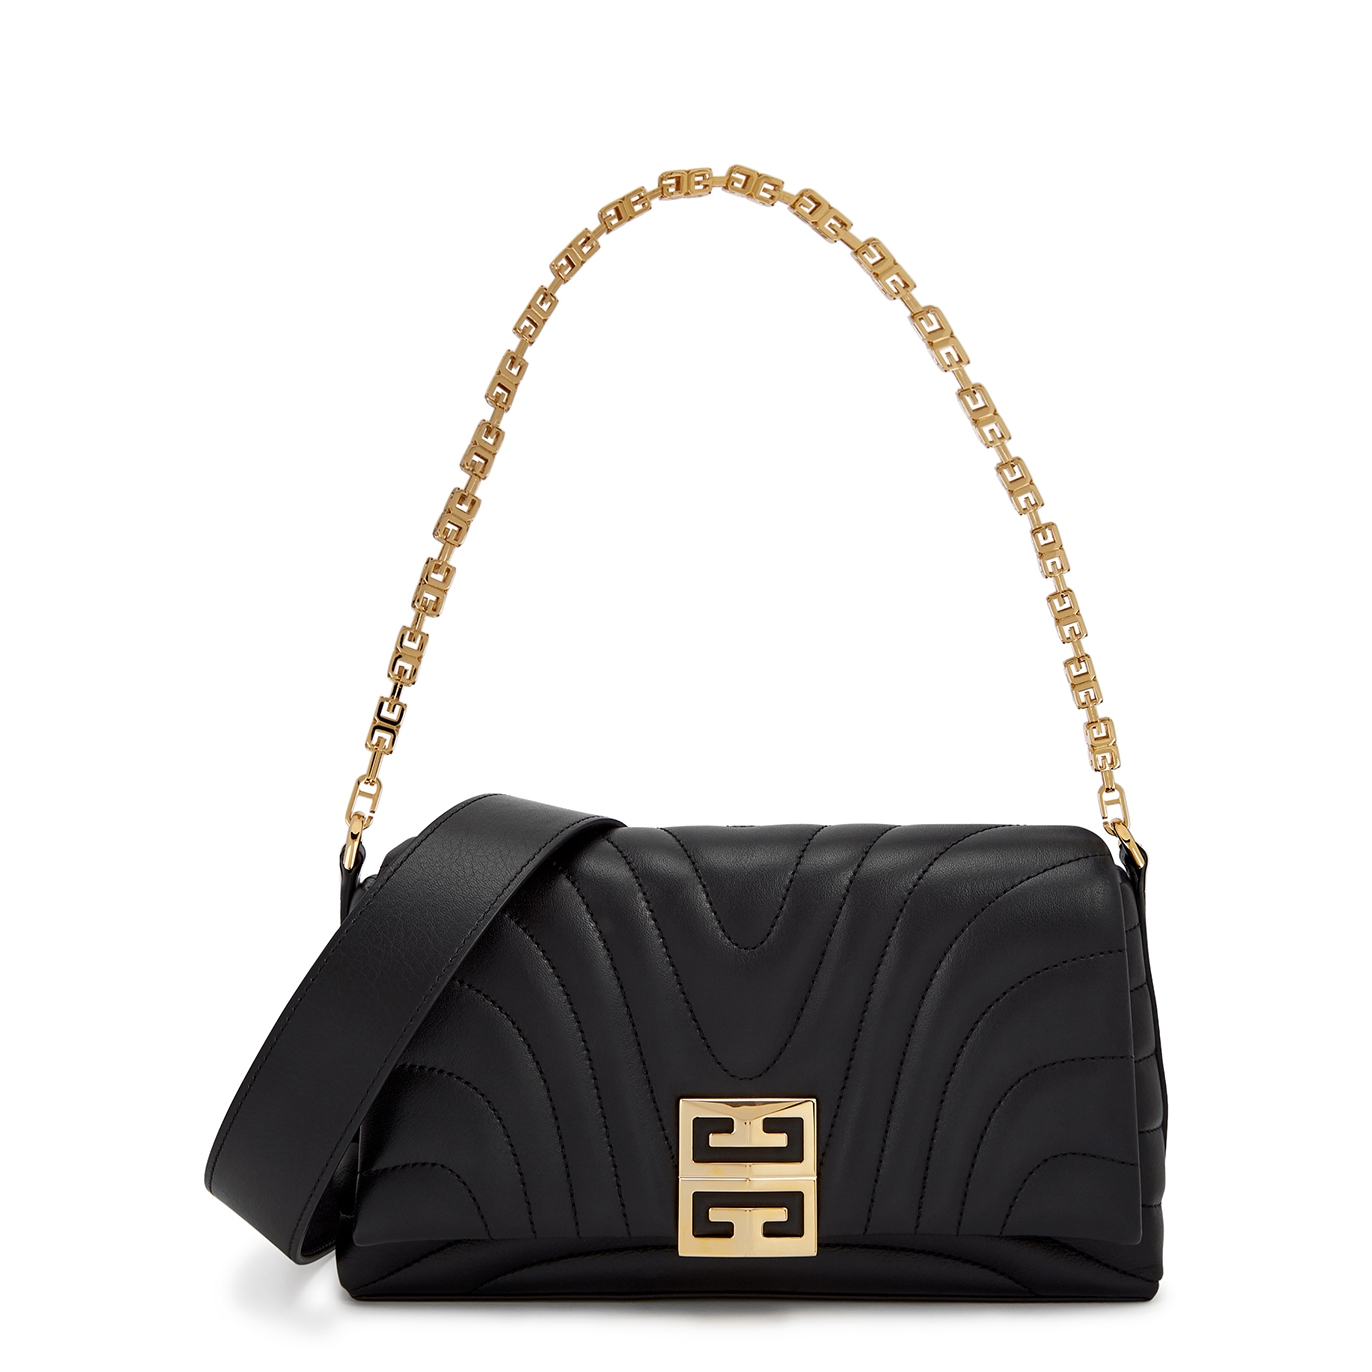 Givenchy 4G Quilted Leather Shoulder Bag - Black